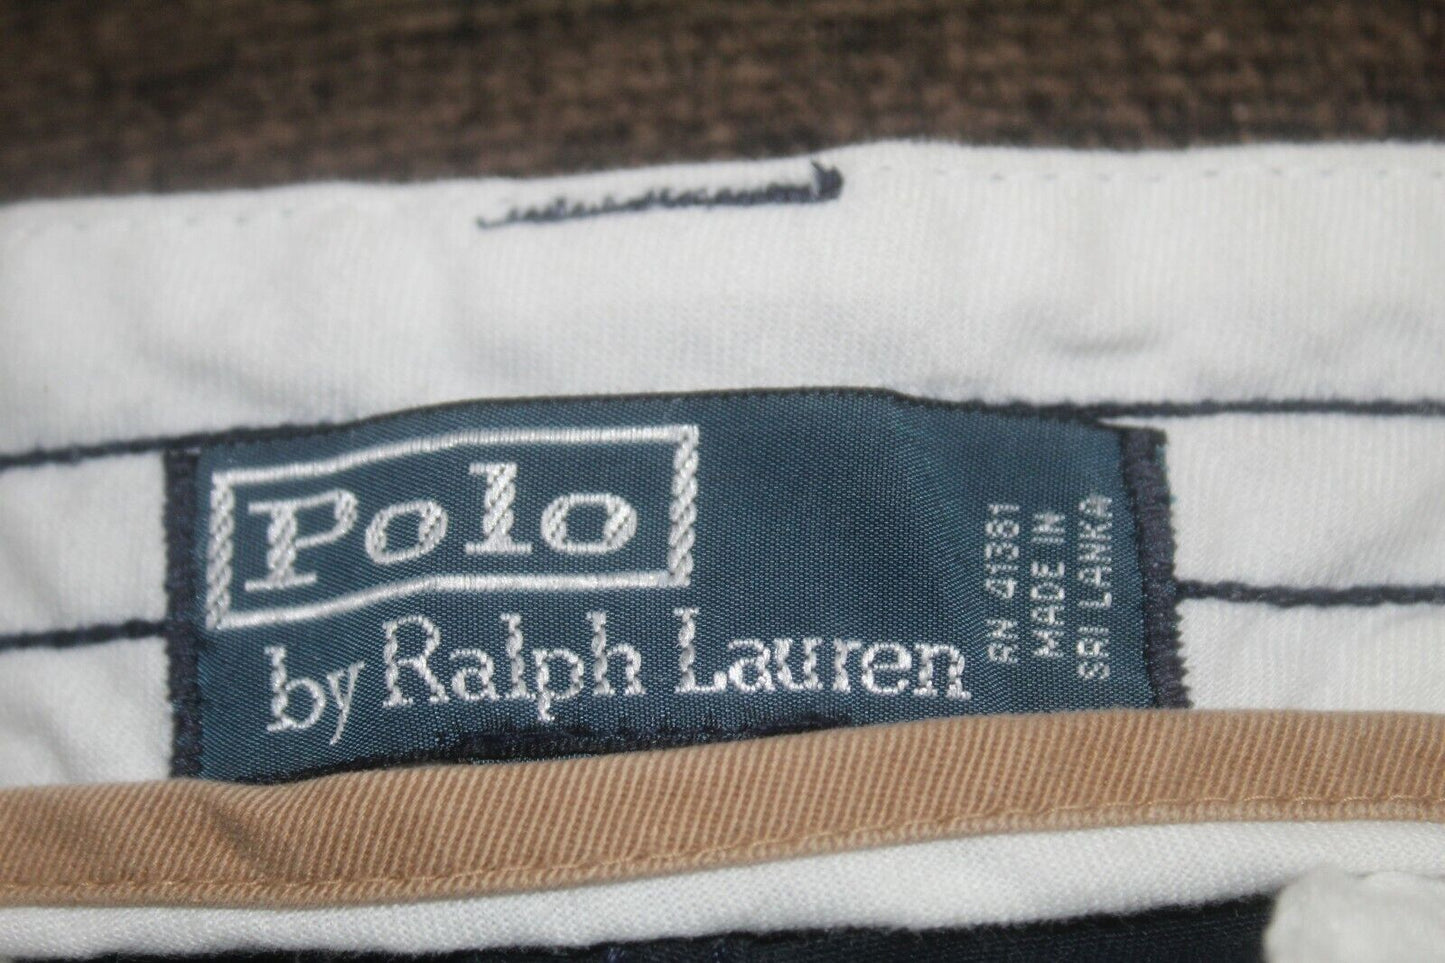 *NWT* Polo Ralph Lauren Size 30 The Gellar Fatigue Cargo Navy Shorts